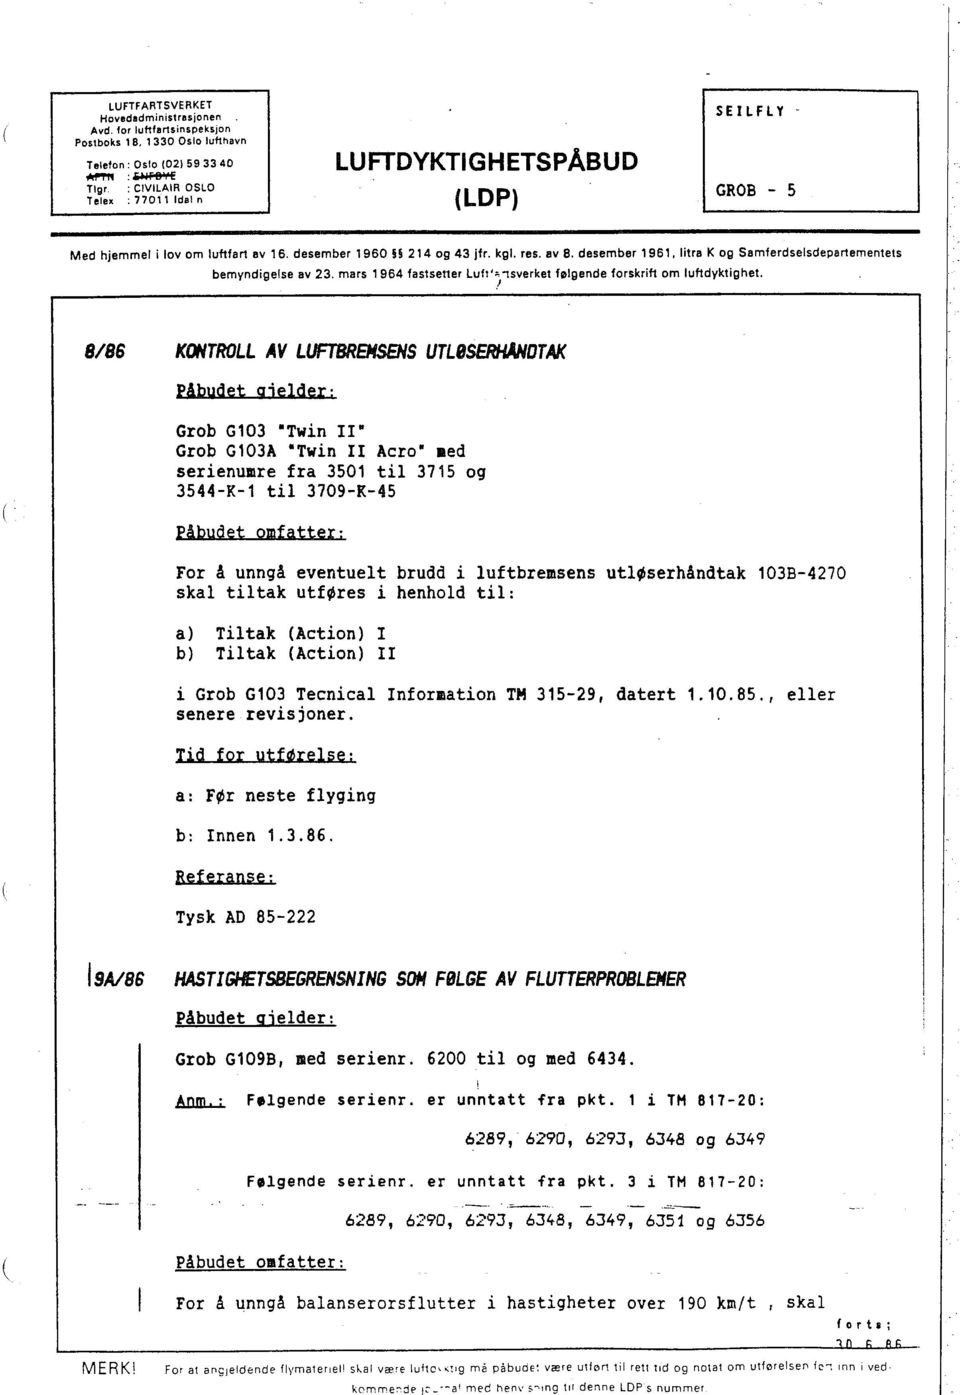 kgl. res. av B. desember 1961. litre K og Semferdselsdepartementets bemyndigelse av 23. mars 1964 fastsener Lult""1sverkei følgende forskrift om luftdyktighet.